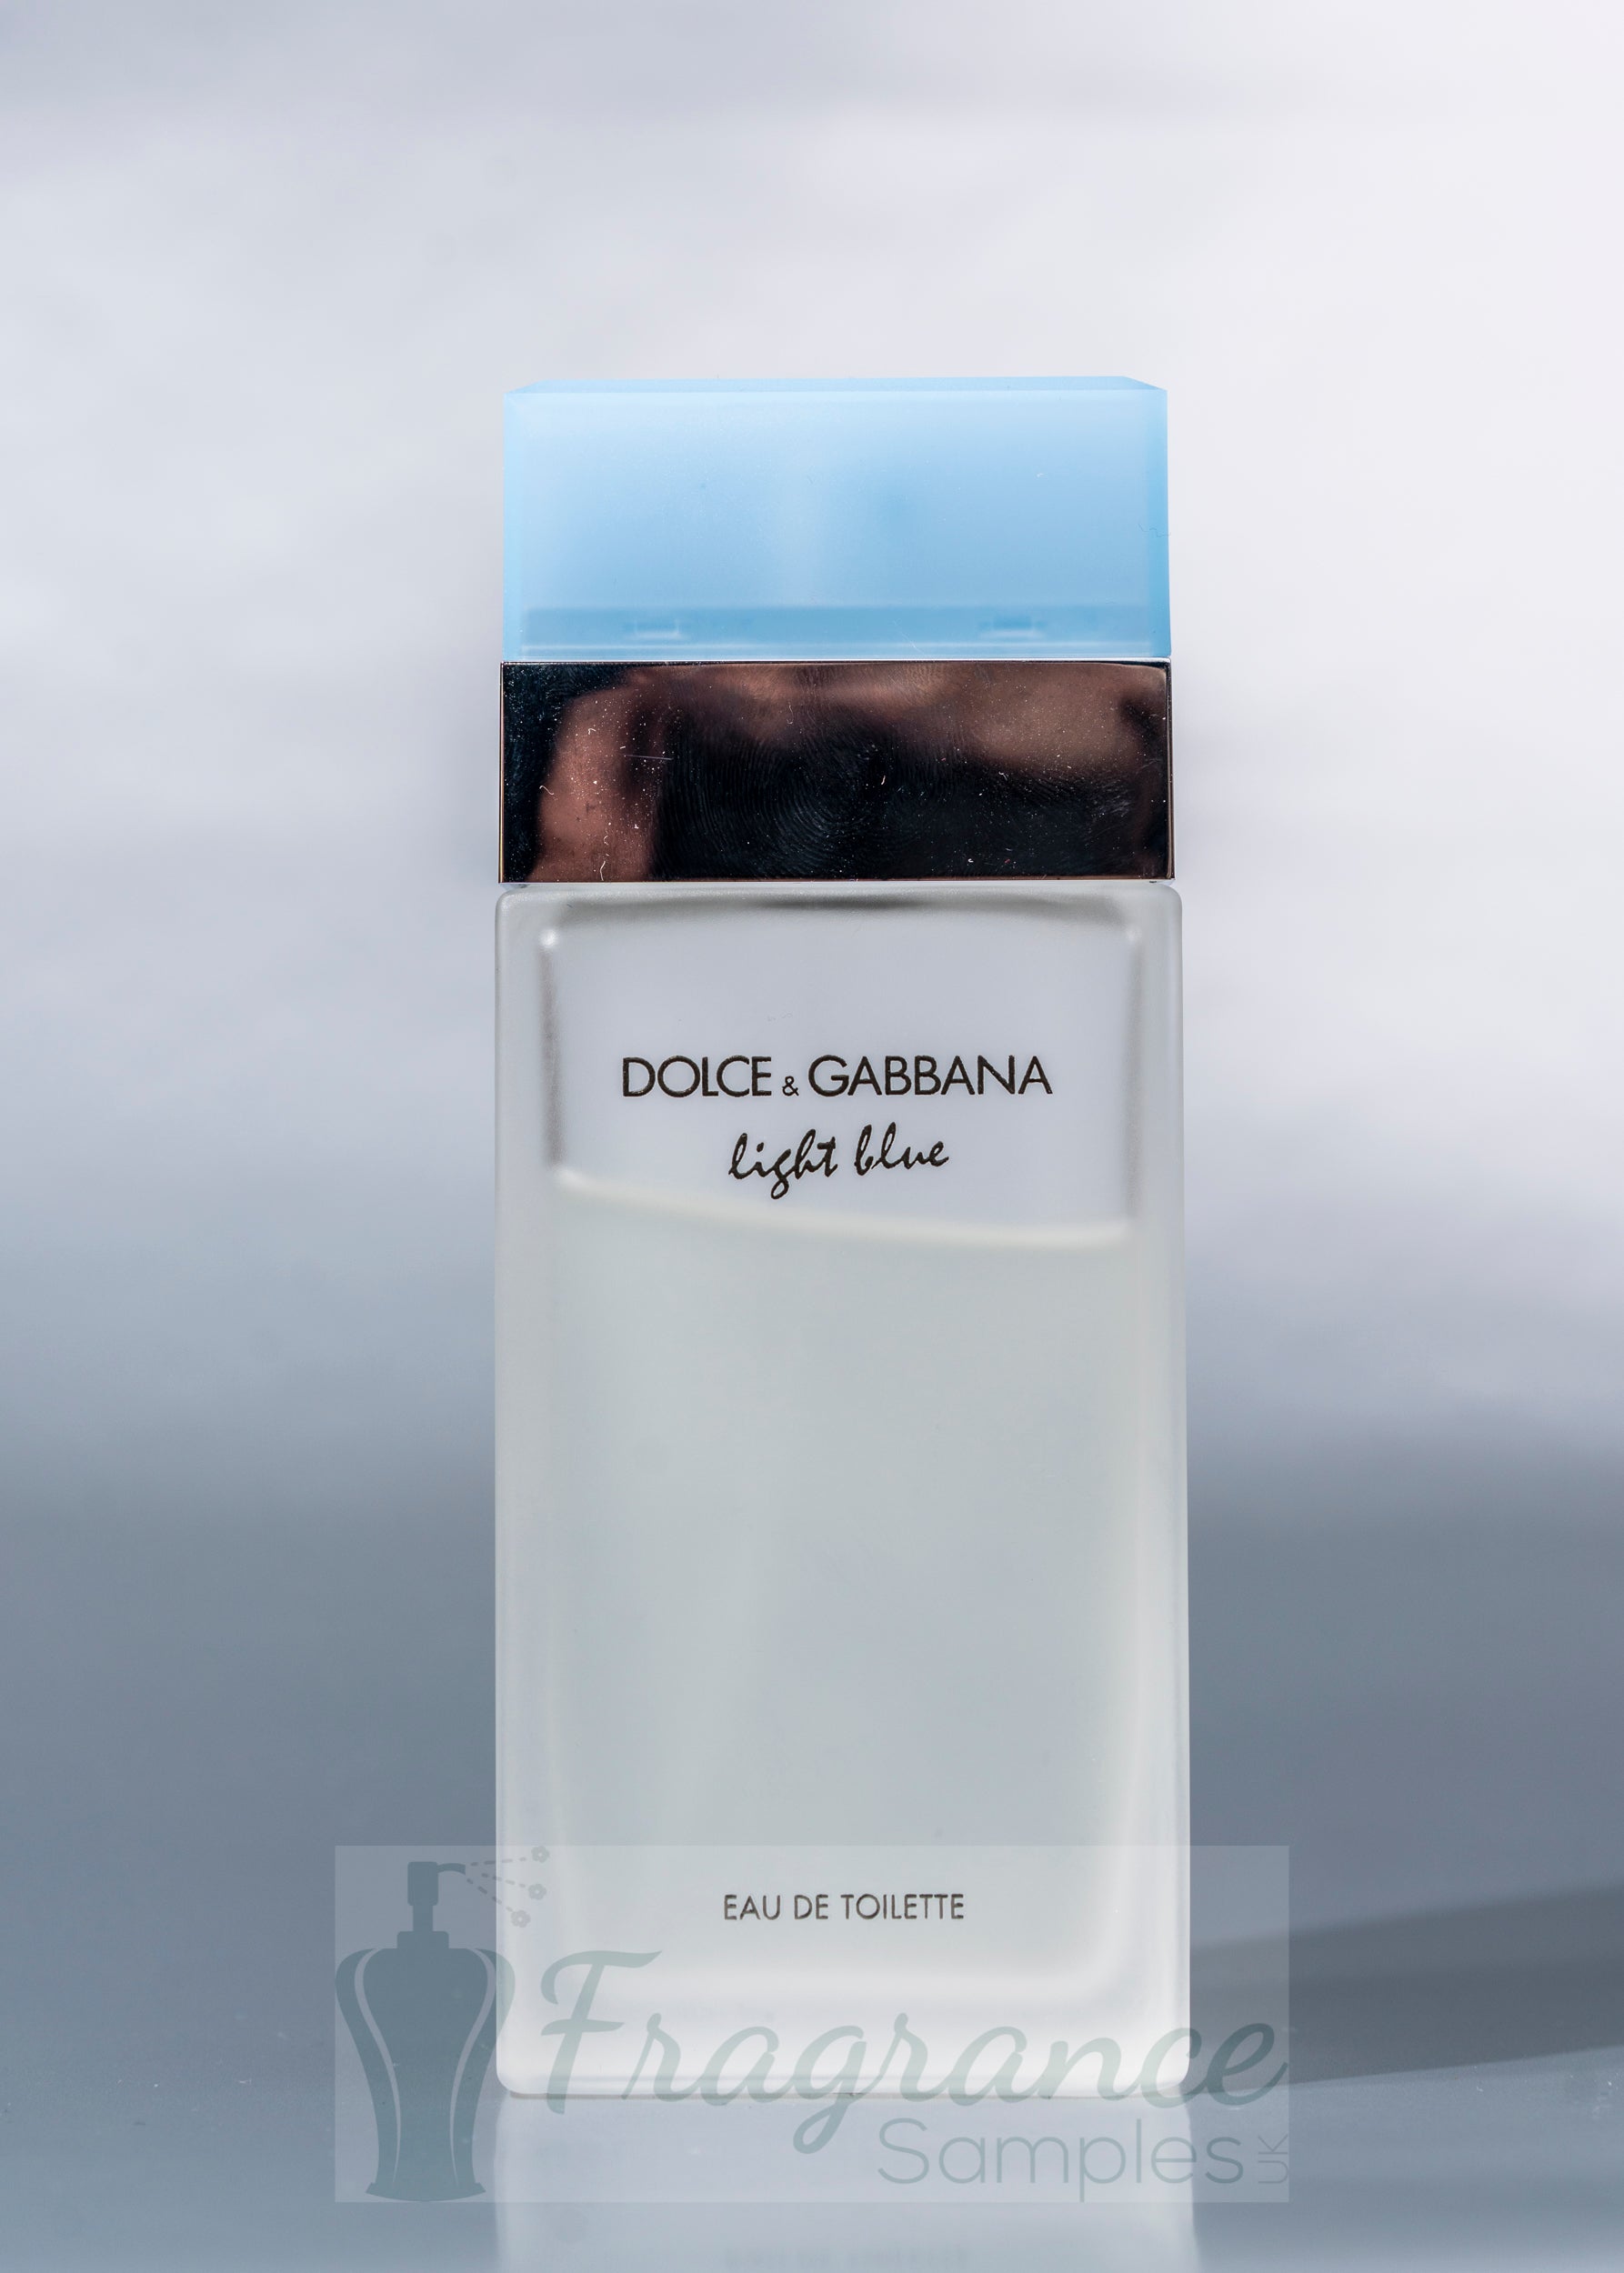 Dolce & Gabbana Light Blue – Fragrance Samples UK